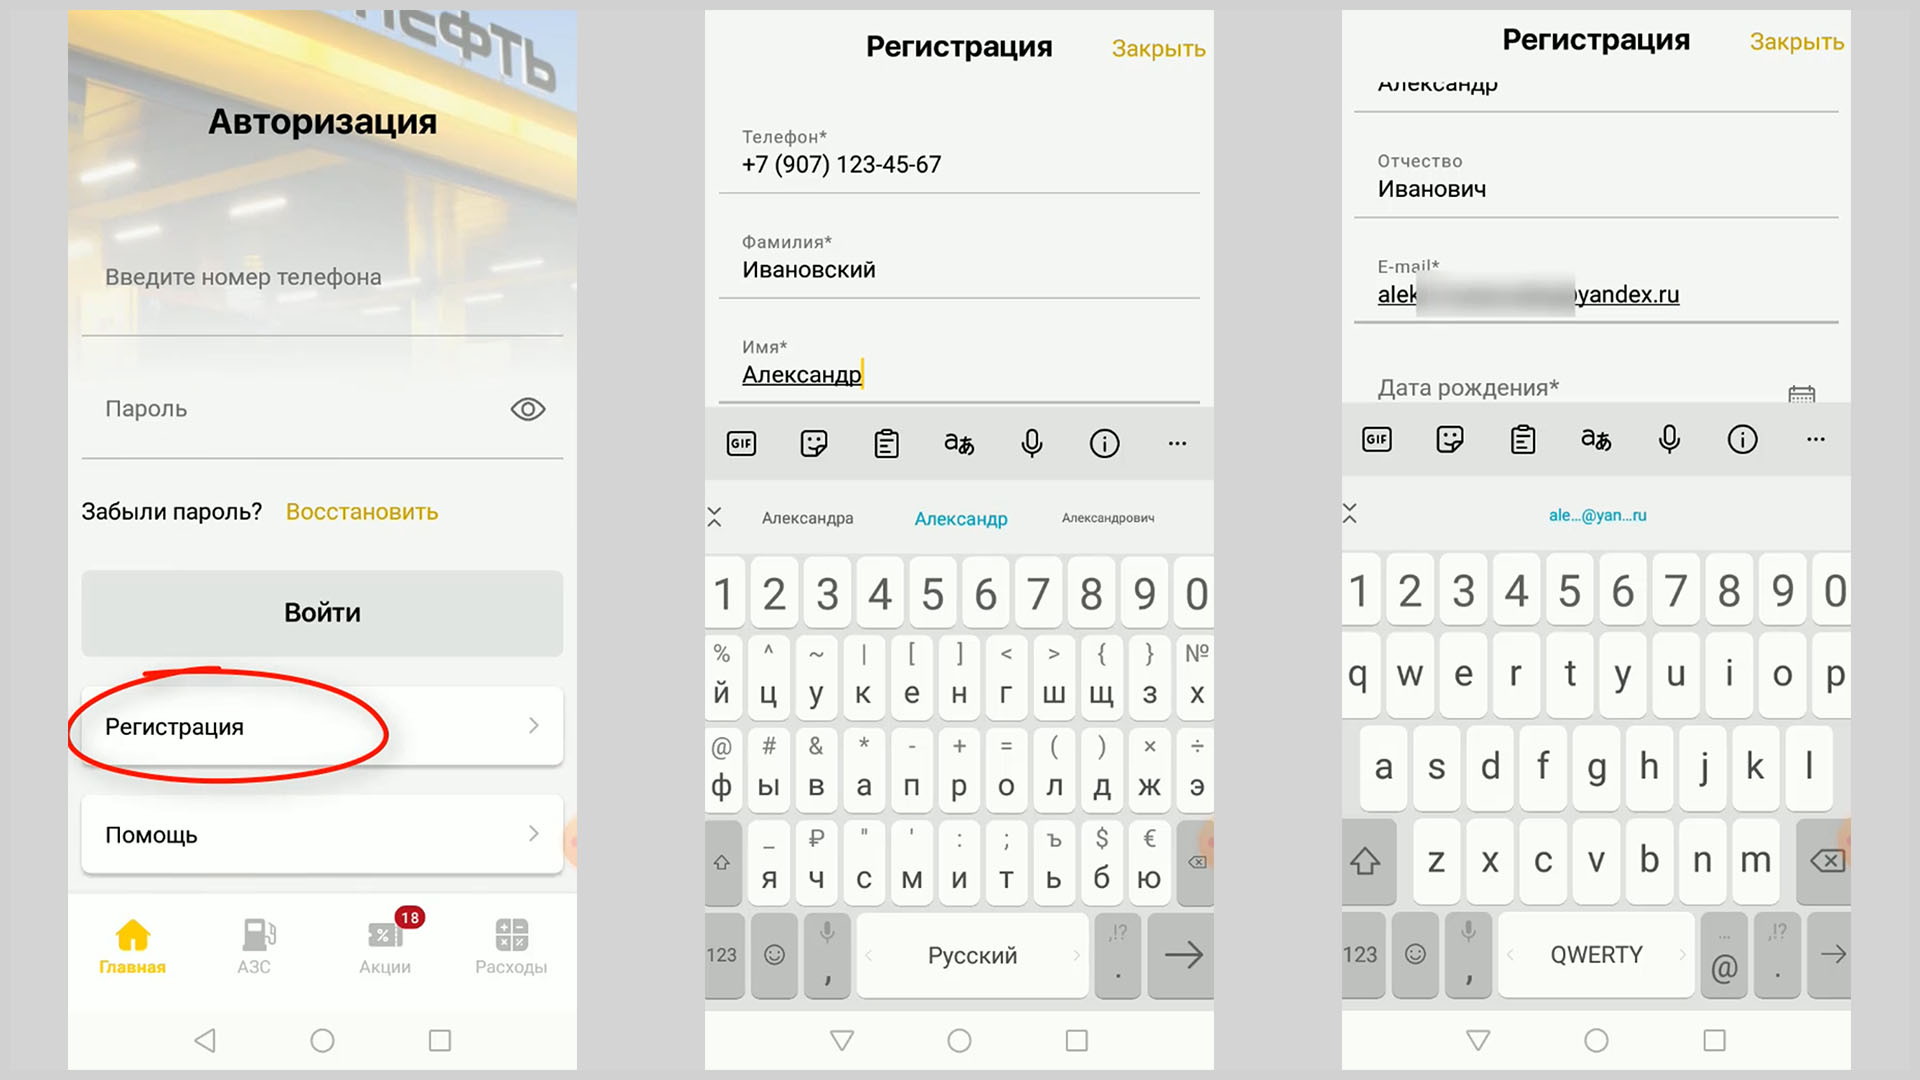 Скриншоты экрана смартфона показывающие начало регистрации в программе «Семейная команда».